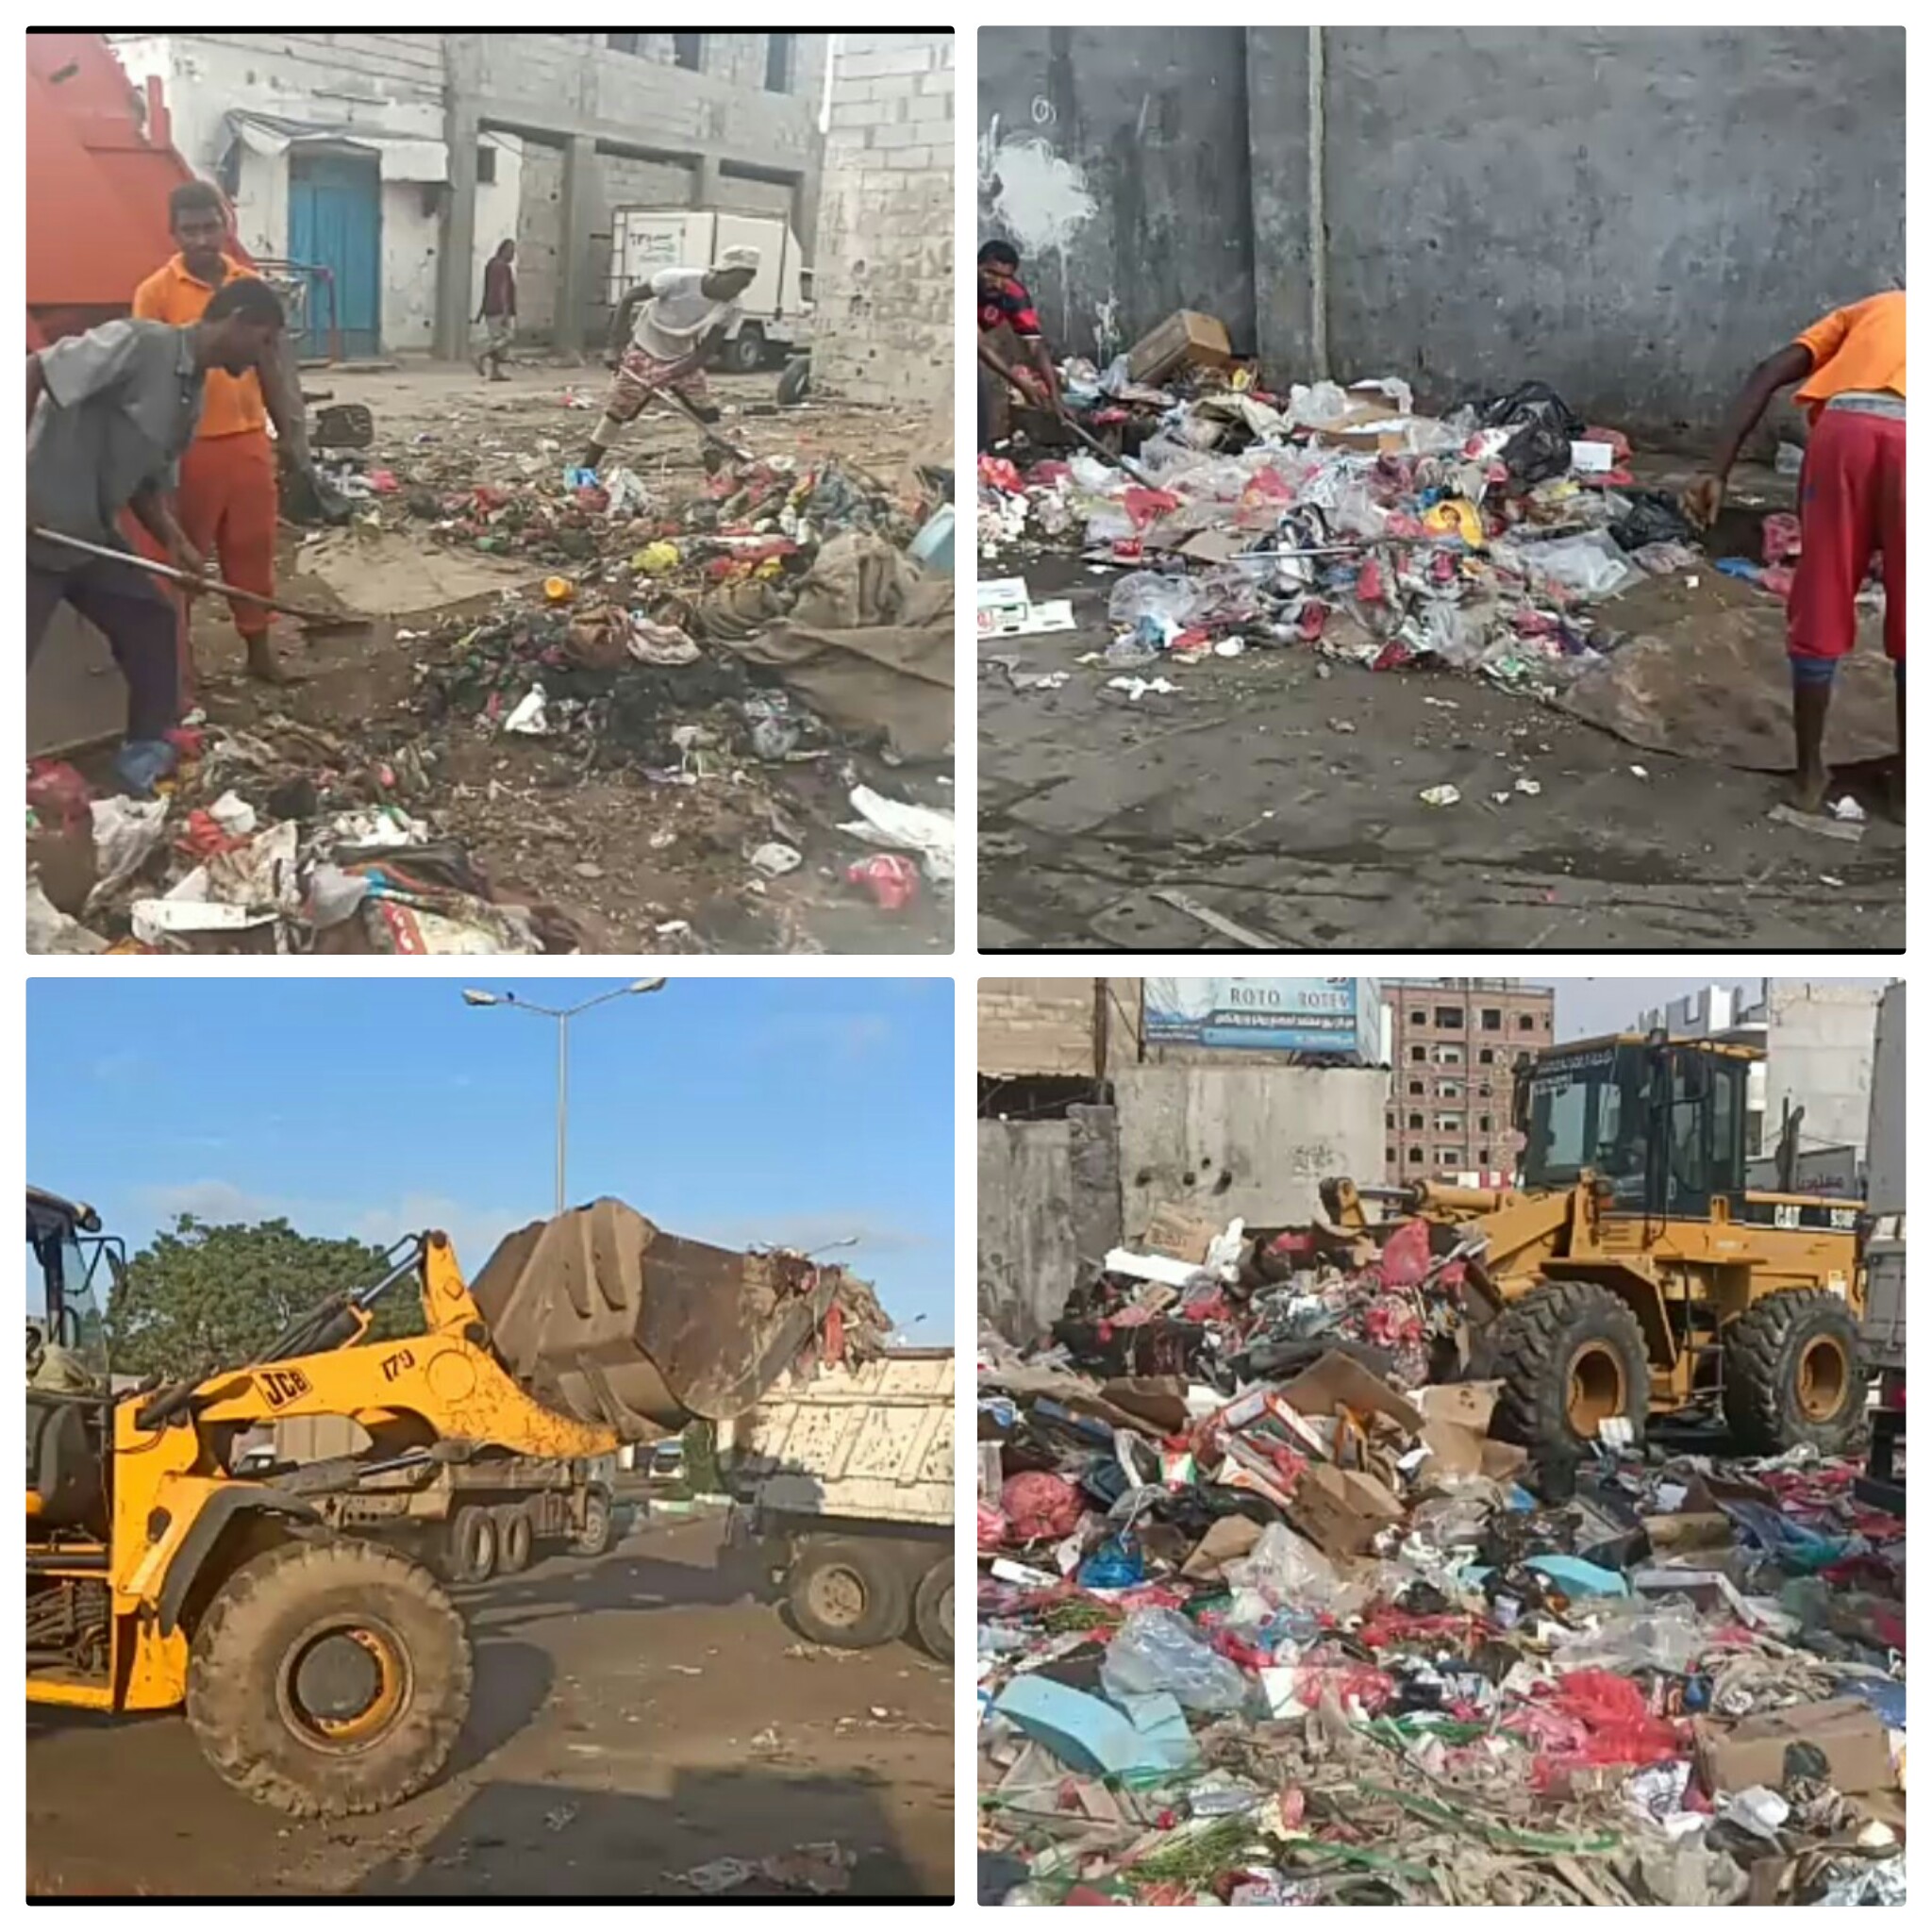 تواصل أعمال حملة النظافة الشاملة في عموم من مناطق مديرية الشيخ عثمان